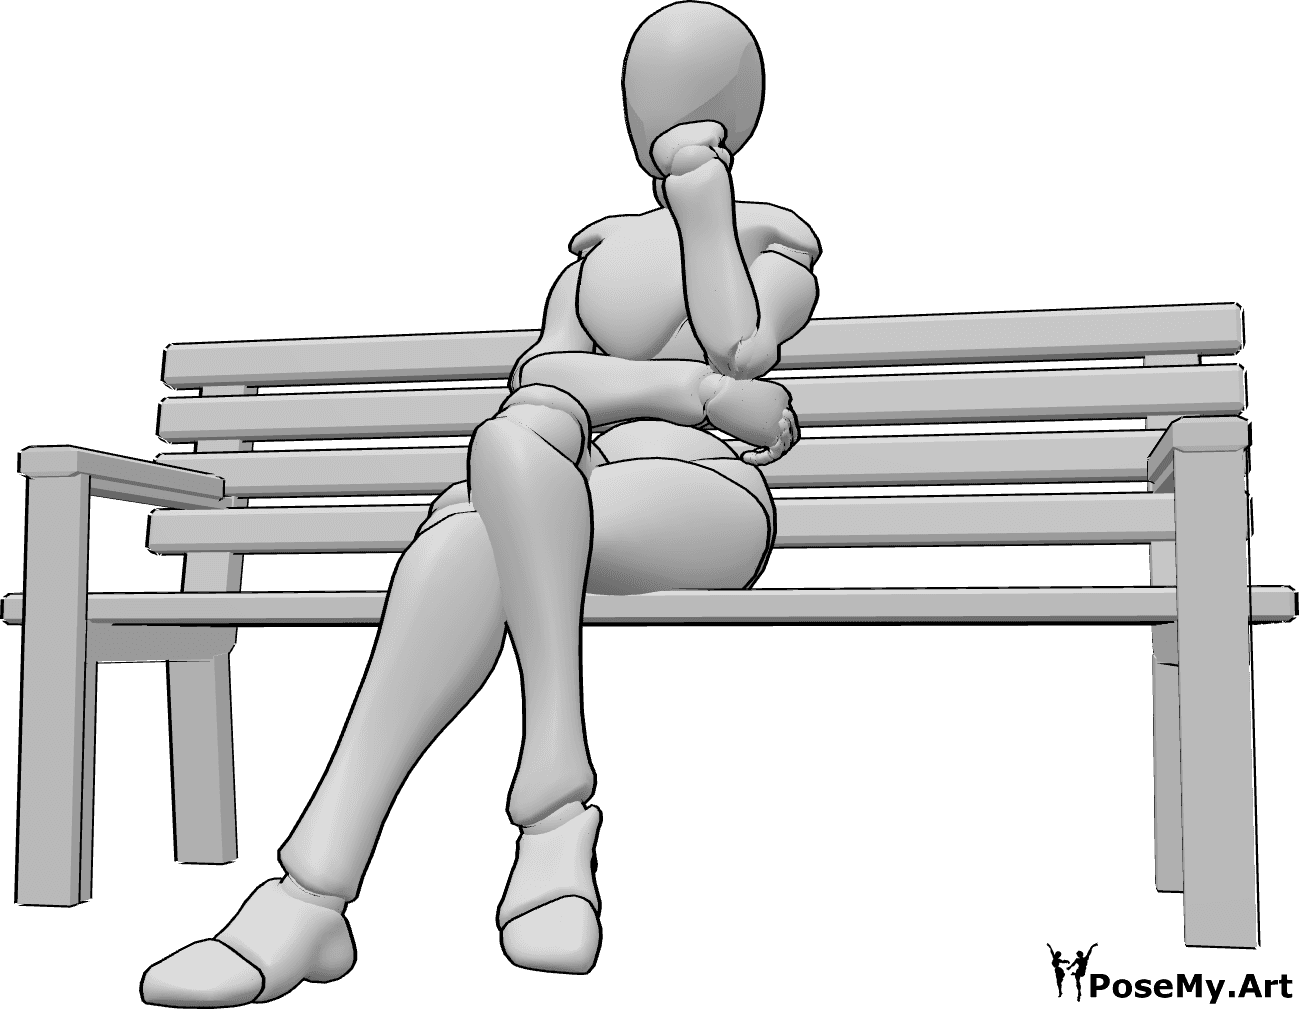 Posen-Referenz- Sitzende Bank-Pose - Die Frau sitzt mit gekreuzten Beinen auf der Bank